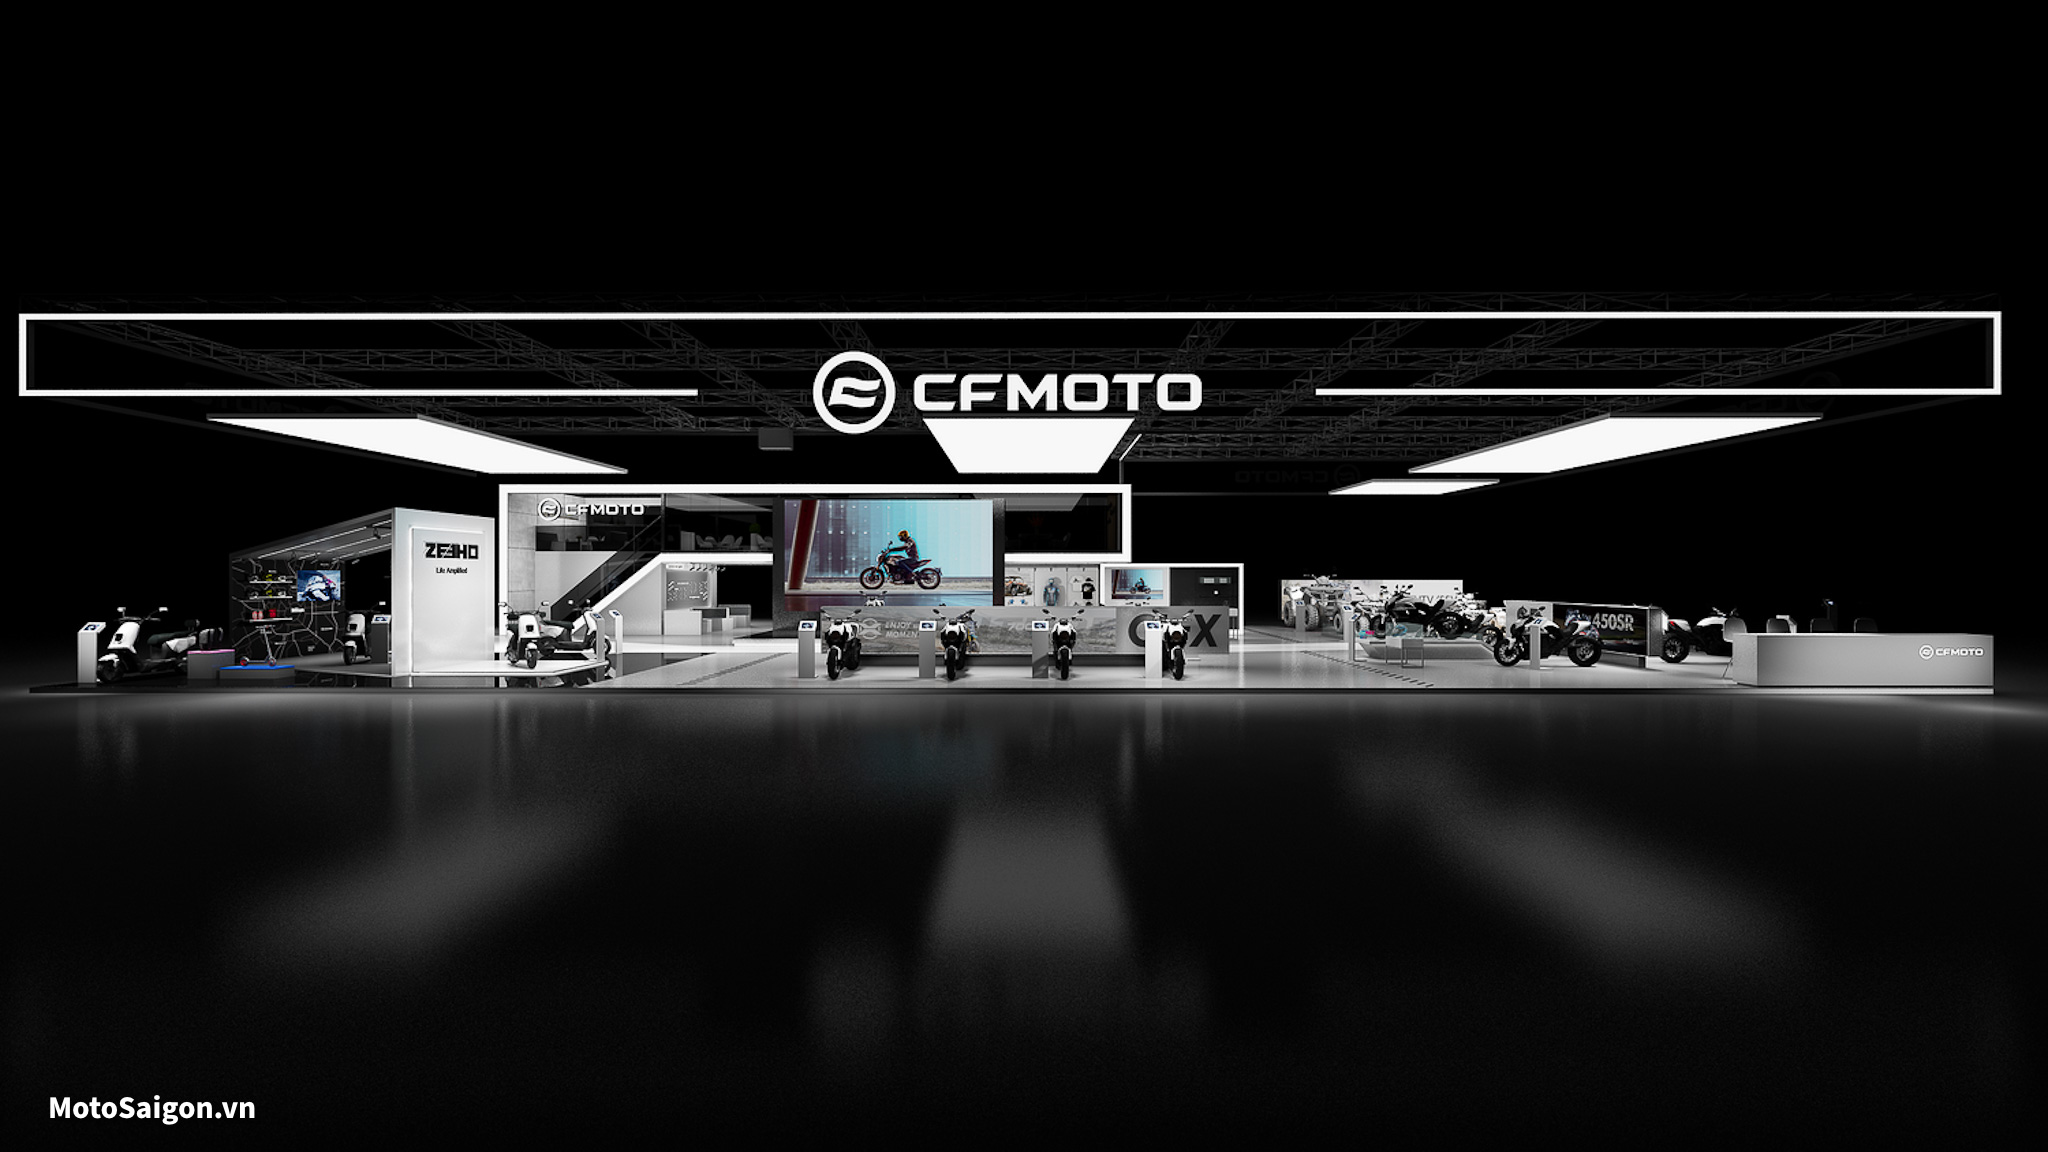 CFMOTO cùng với ZEEHO sẽ mắt loạt sản phẩm mới tại EICMA 2022